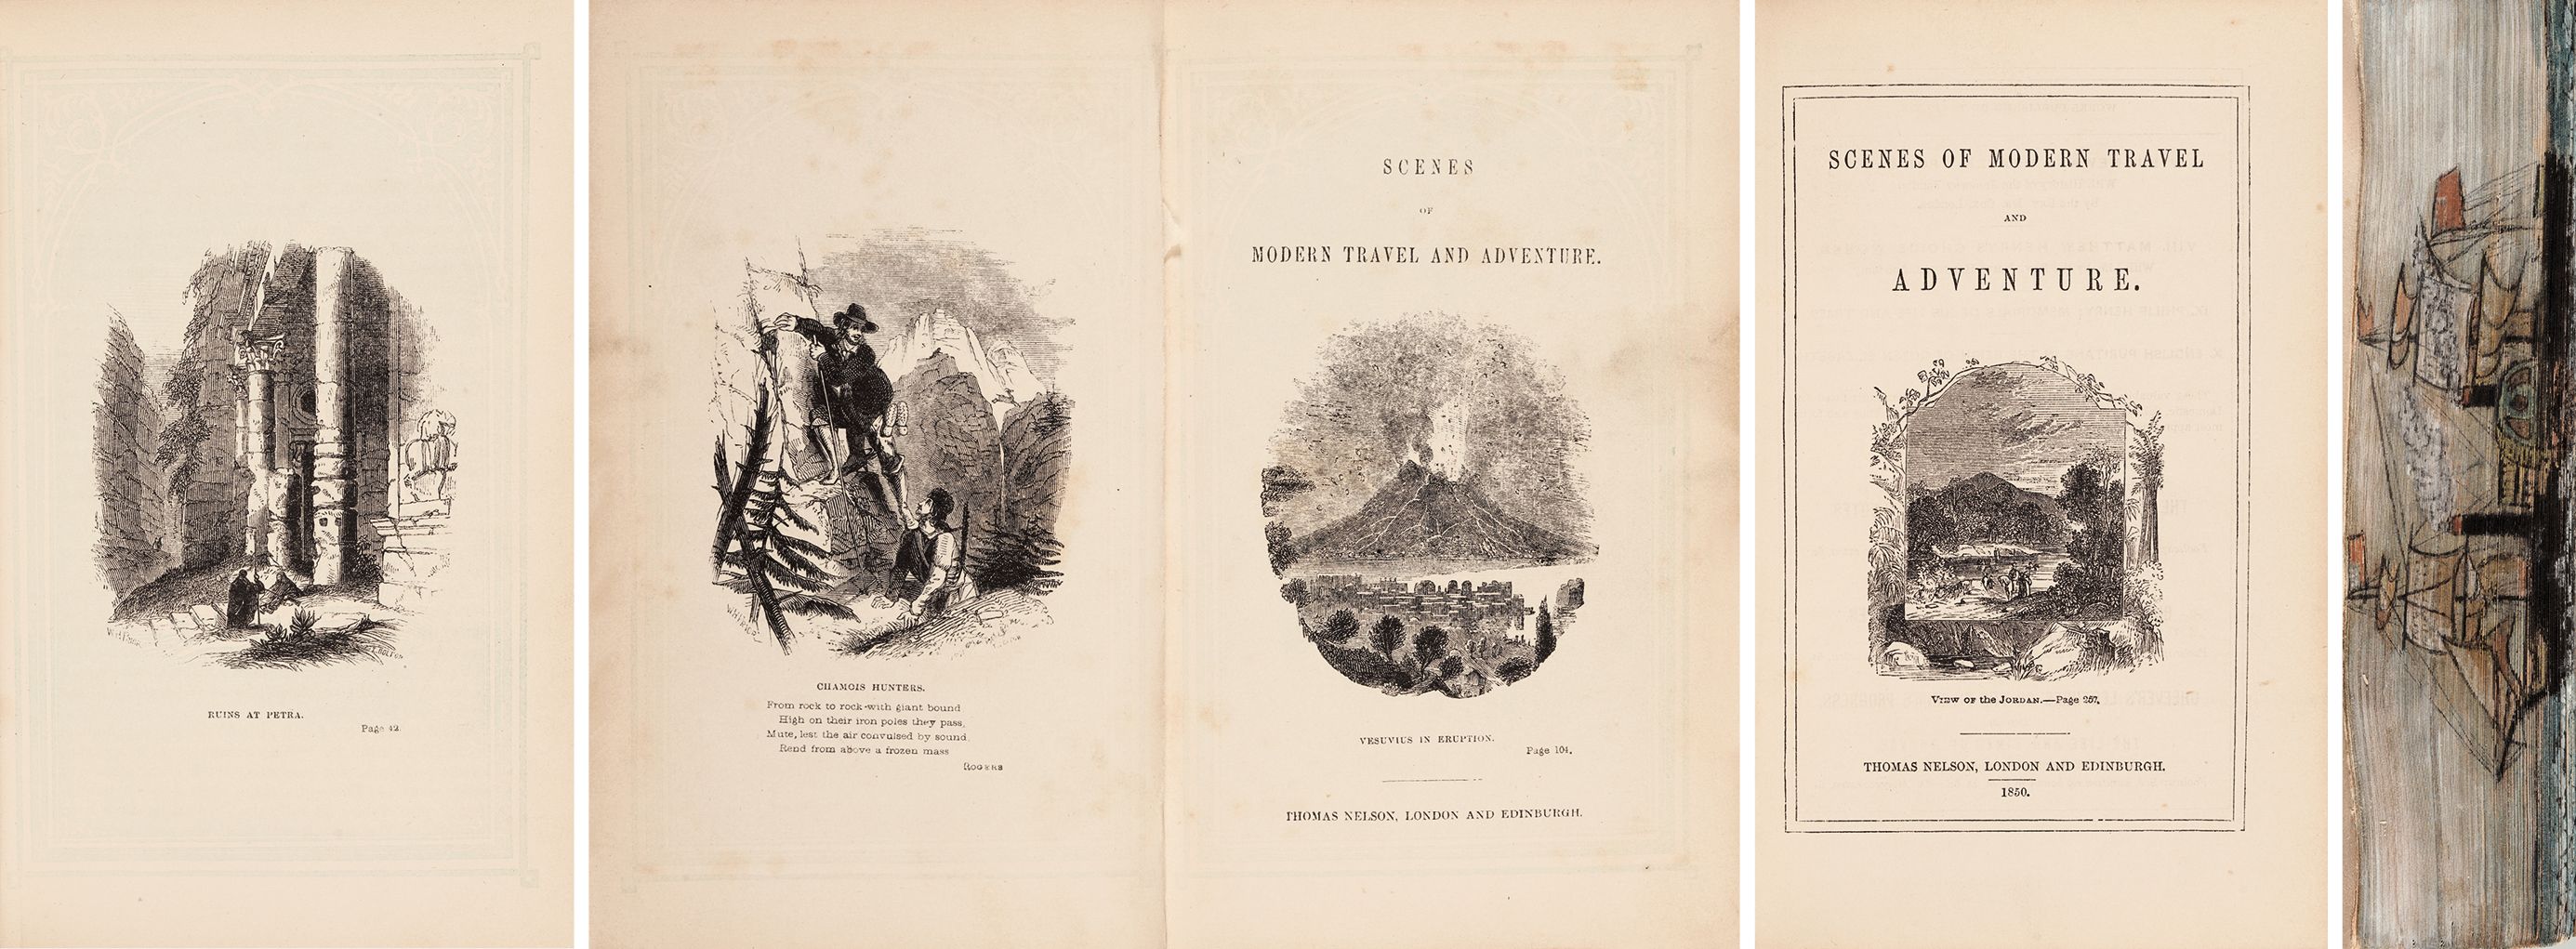 冒险家的探险之旅（书口彩绘） 1850年伦敦 Thomas Nelson 出版